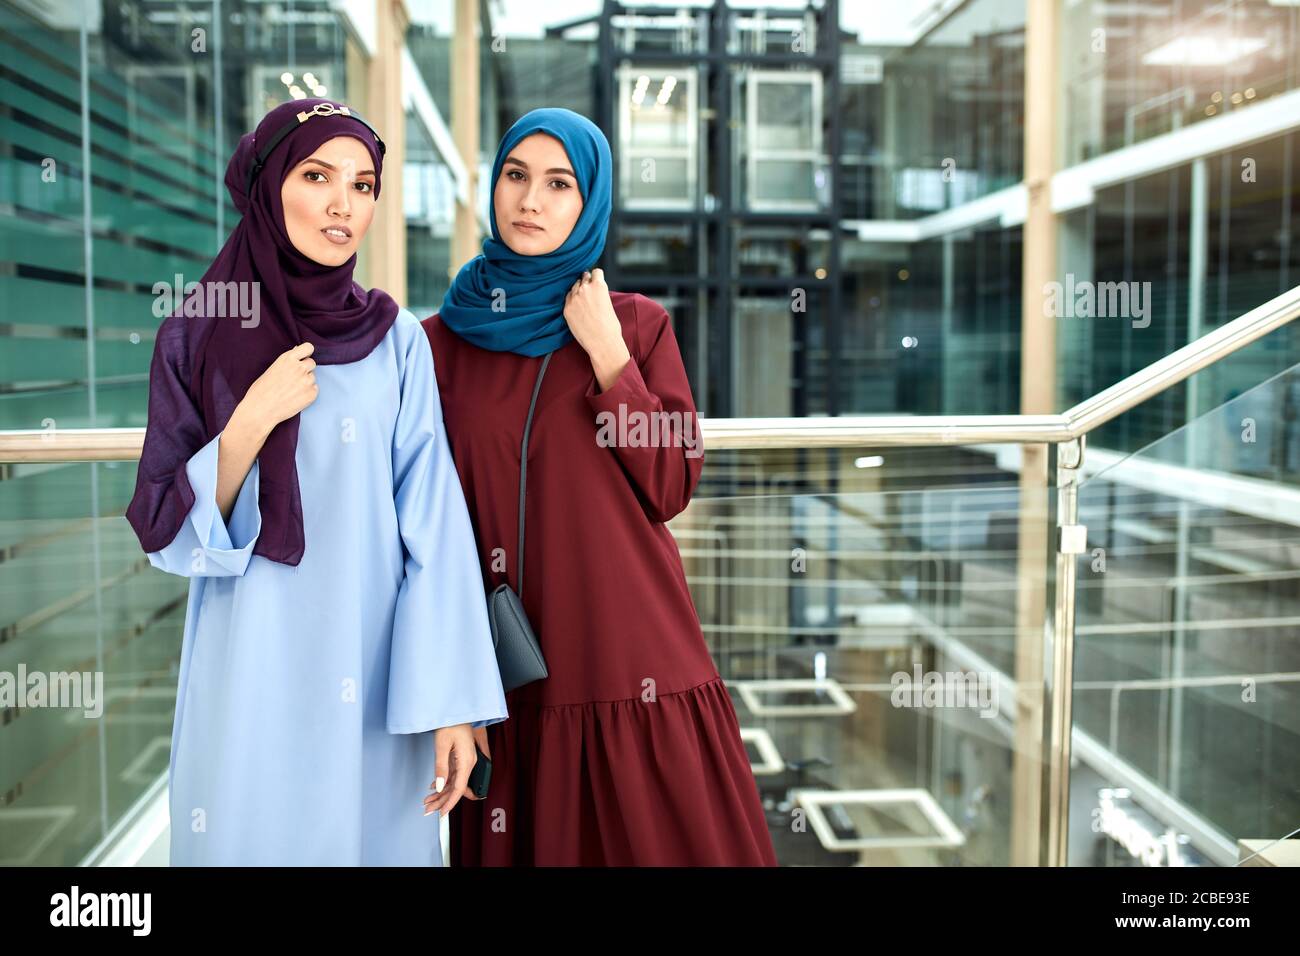 Ritratto di due giovani donne islamiche vestite di abiti musulmani con i  hijab sulla testa guardando